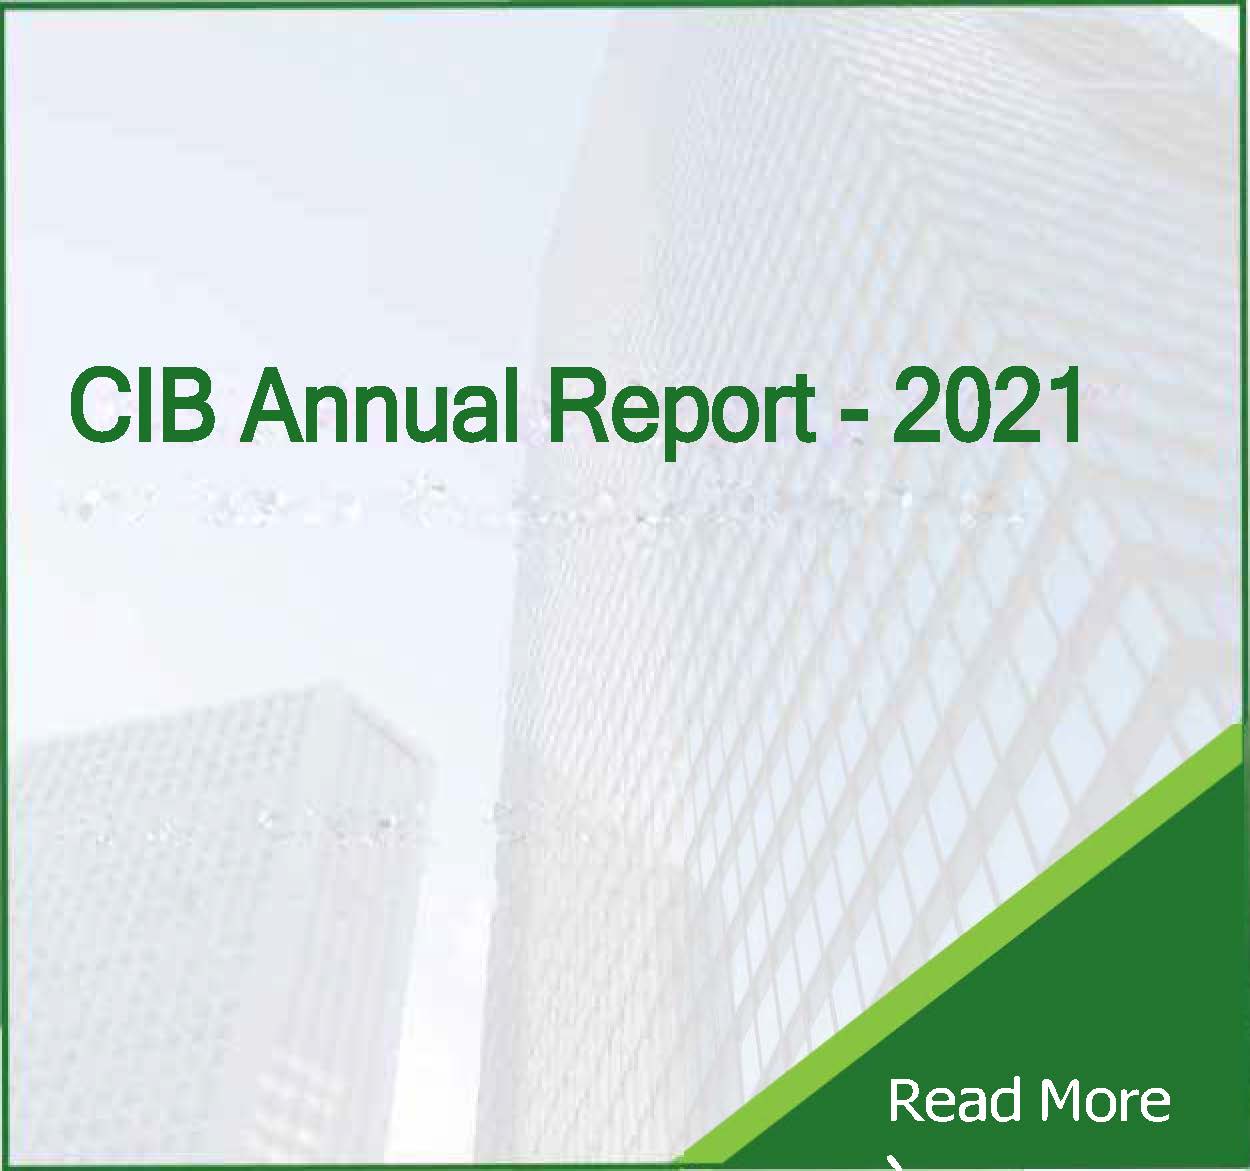 CIB Annual Report 2021